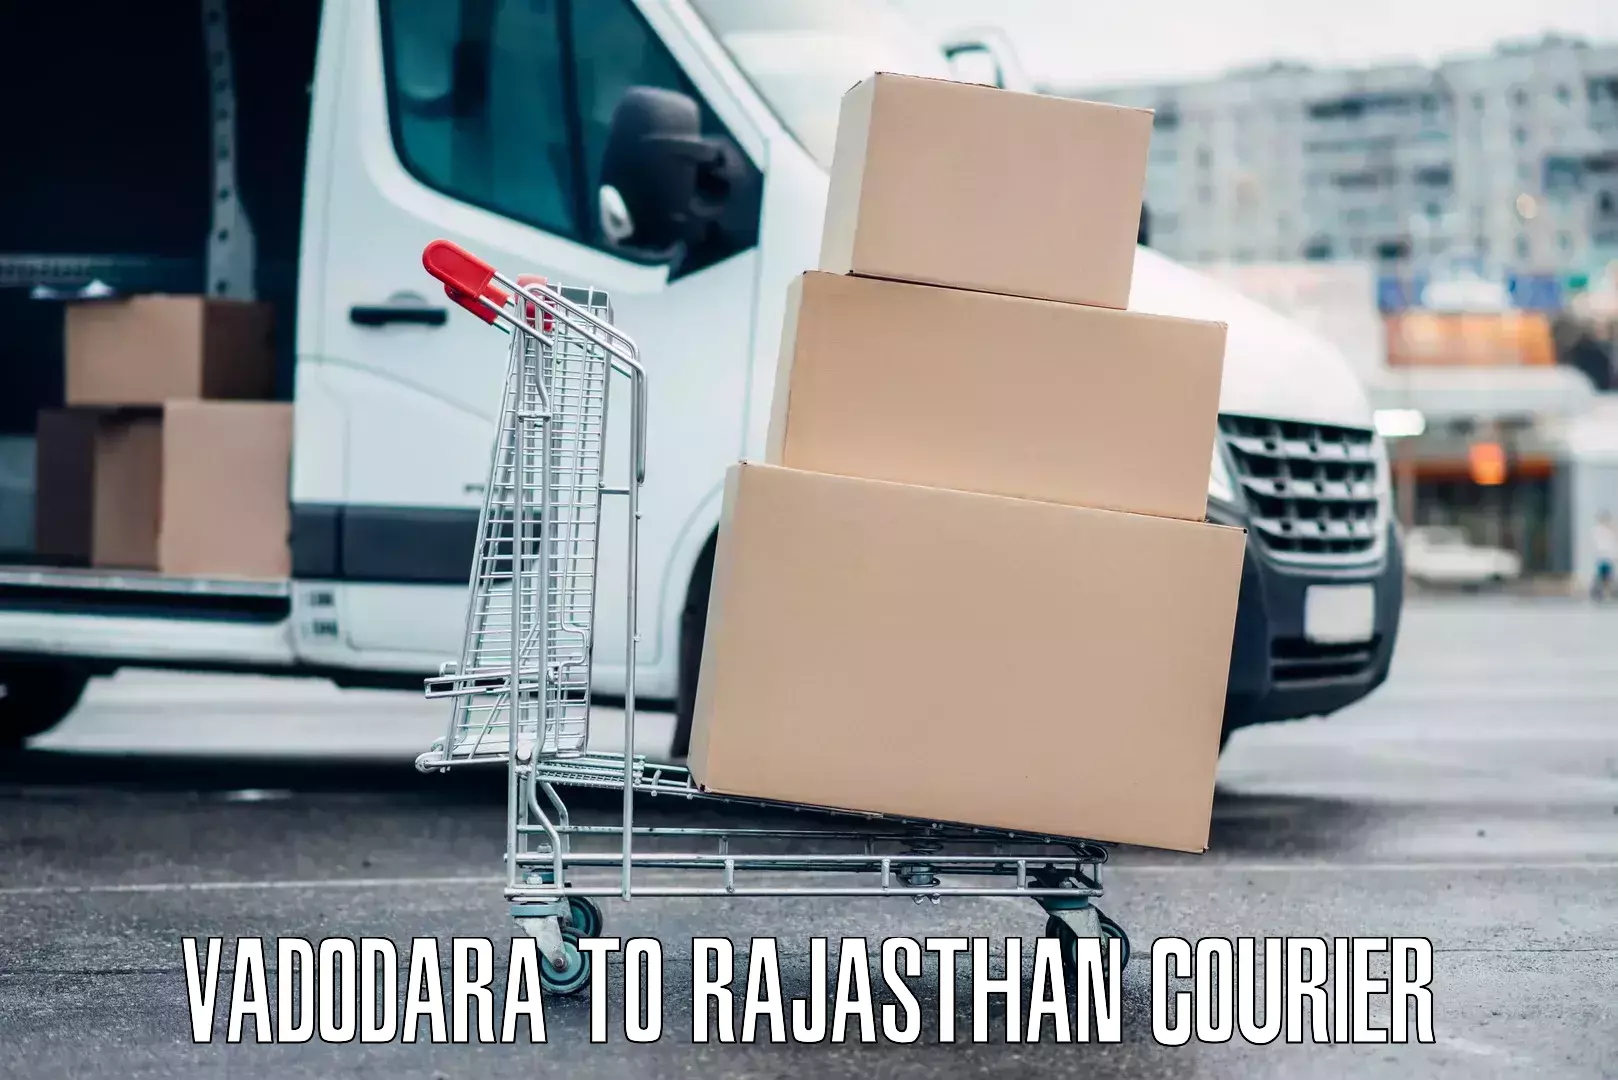 Online luggage shipping booking in Vadodara to Rajasthan